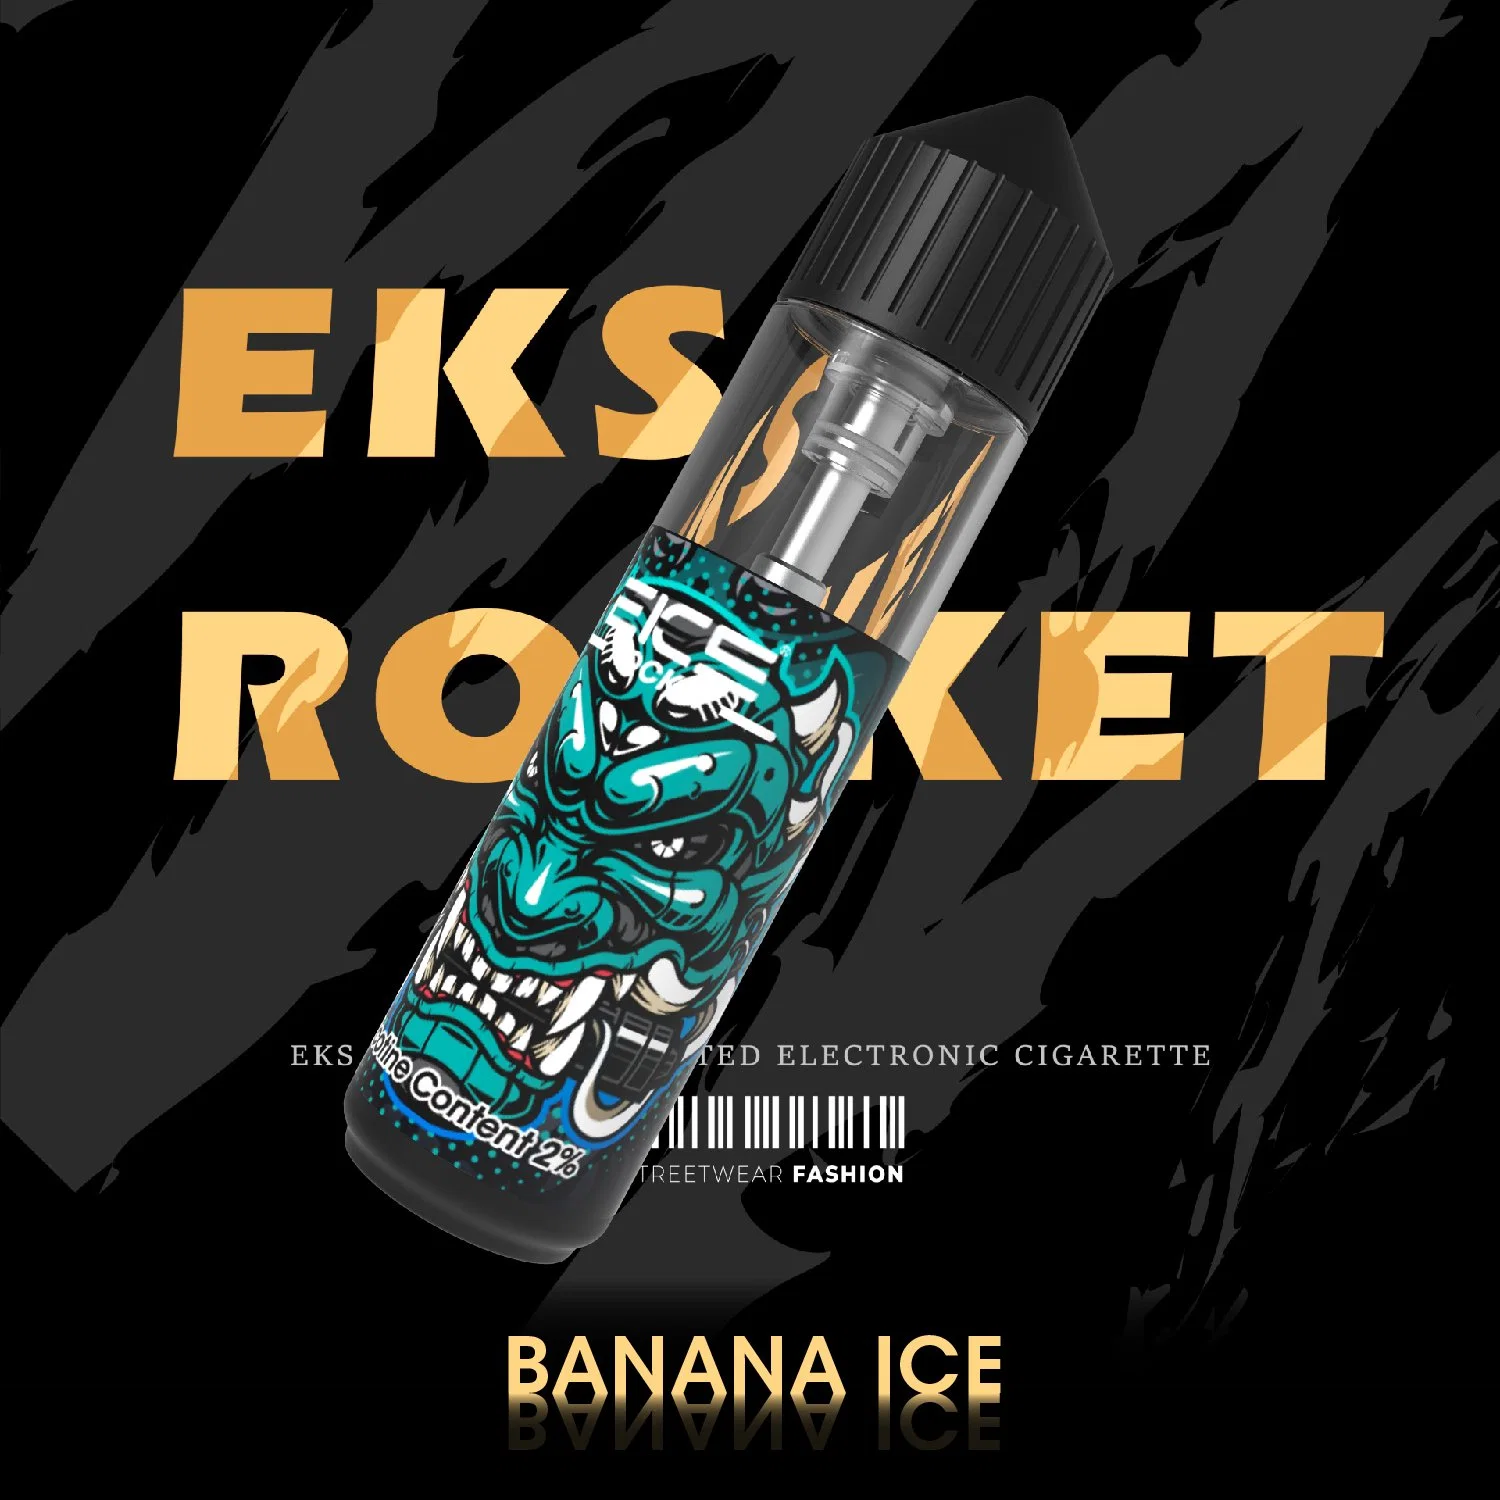 EKS Rocket débit d'air réglable OEM Custom Manufacturers Wholesale Vape Disposable Fume sanitaire rechargeable 15ml 8000Puff cigarette E-cigarette Randm Tornado